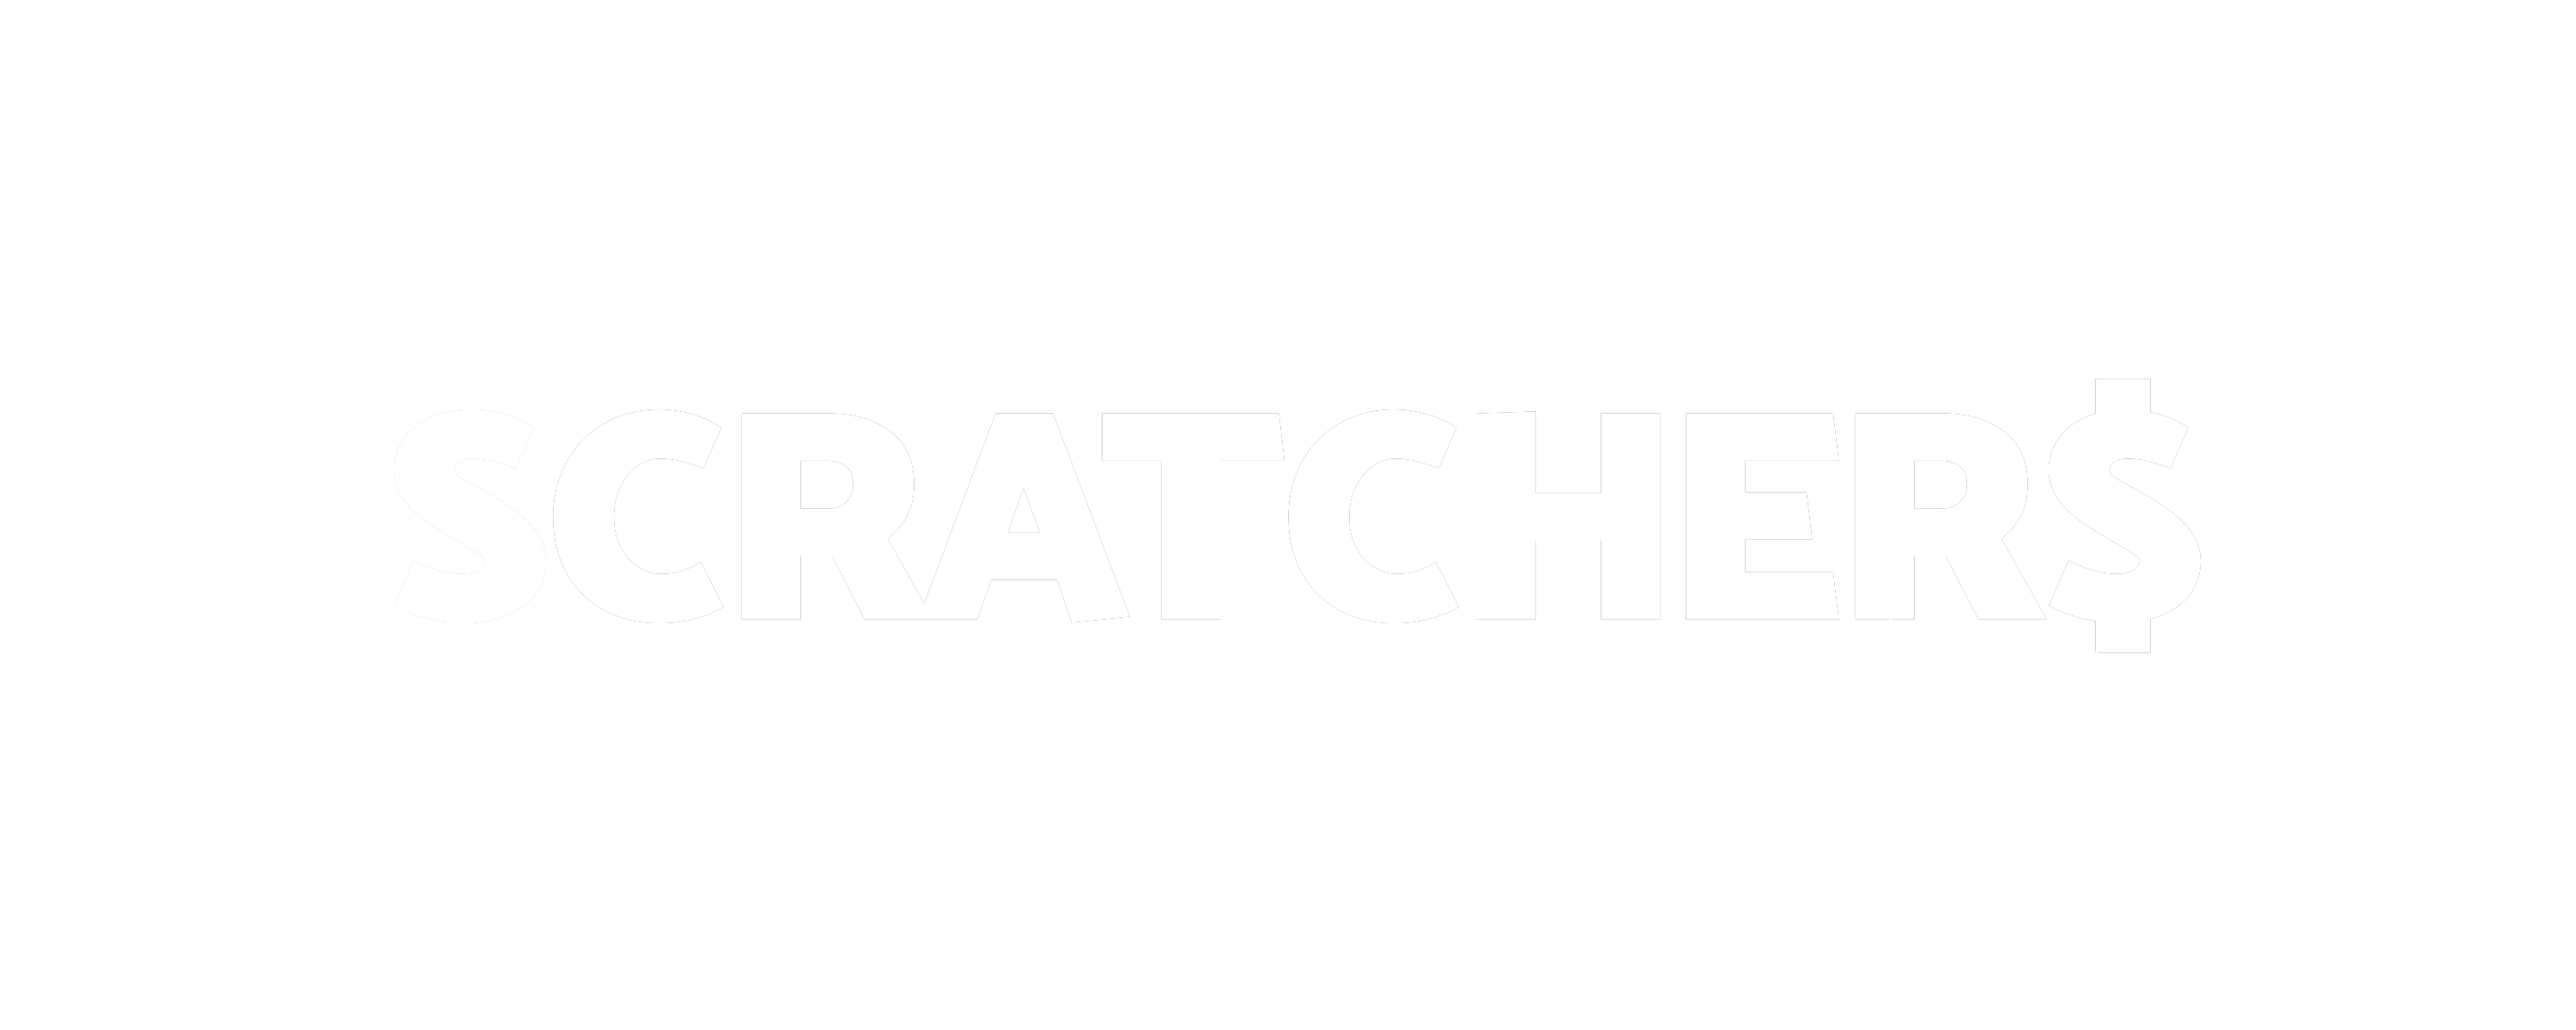 Buy scratchers online california